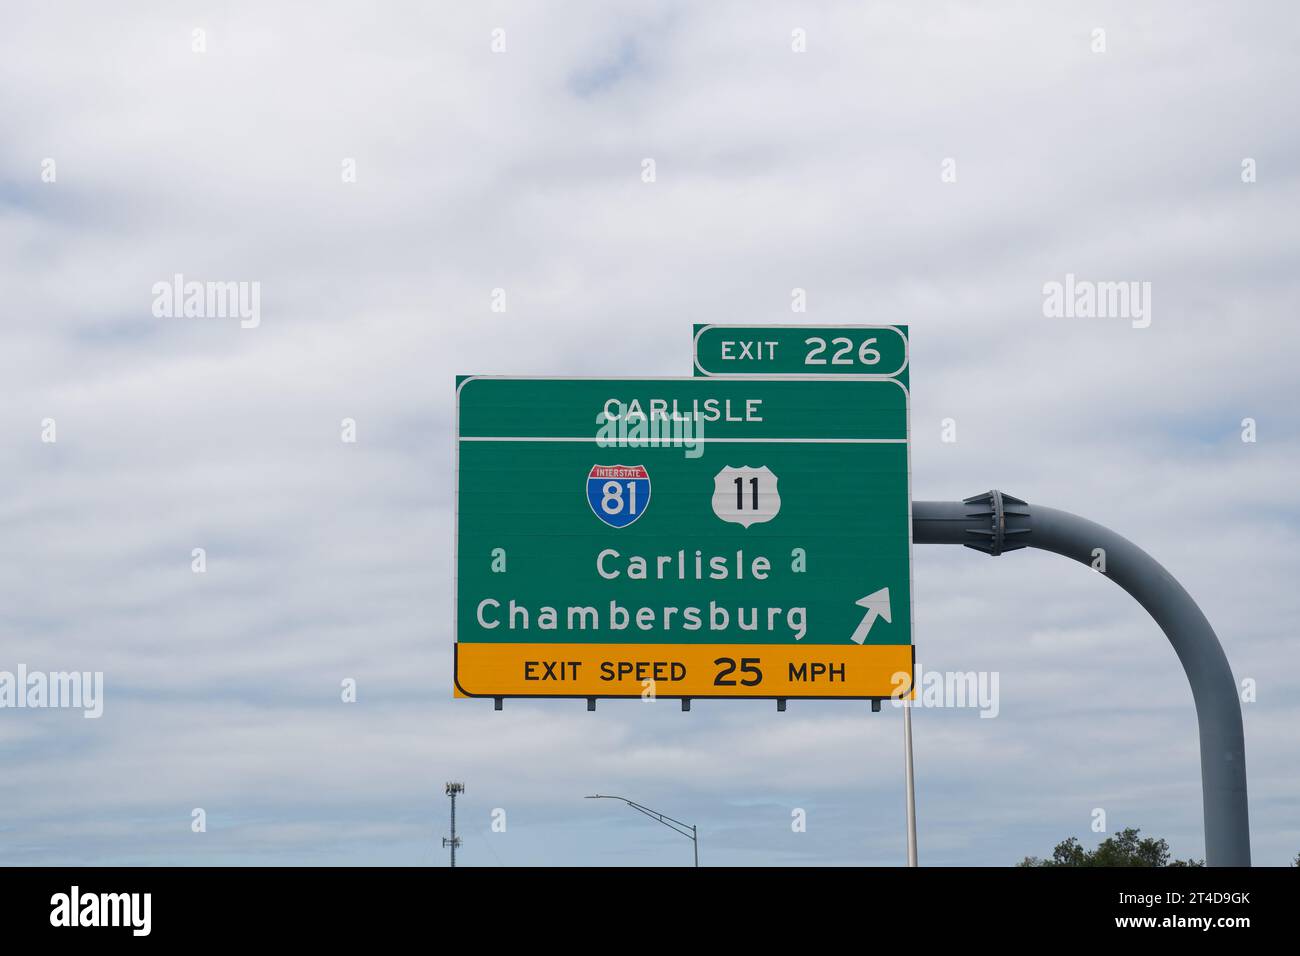 Prenez la sortie 226 sur l'autoroute à péage I-76 Pennsylvania Turnpike vers l'Interstate 81 et l'US 11 vers Carlisle et Chambersburg Banque D'Images